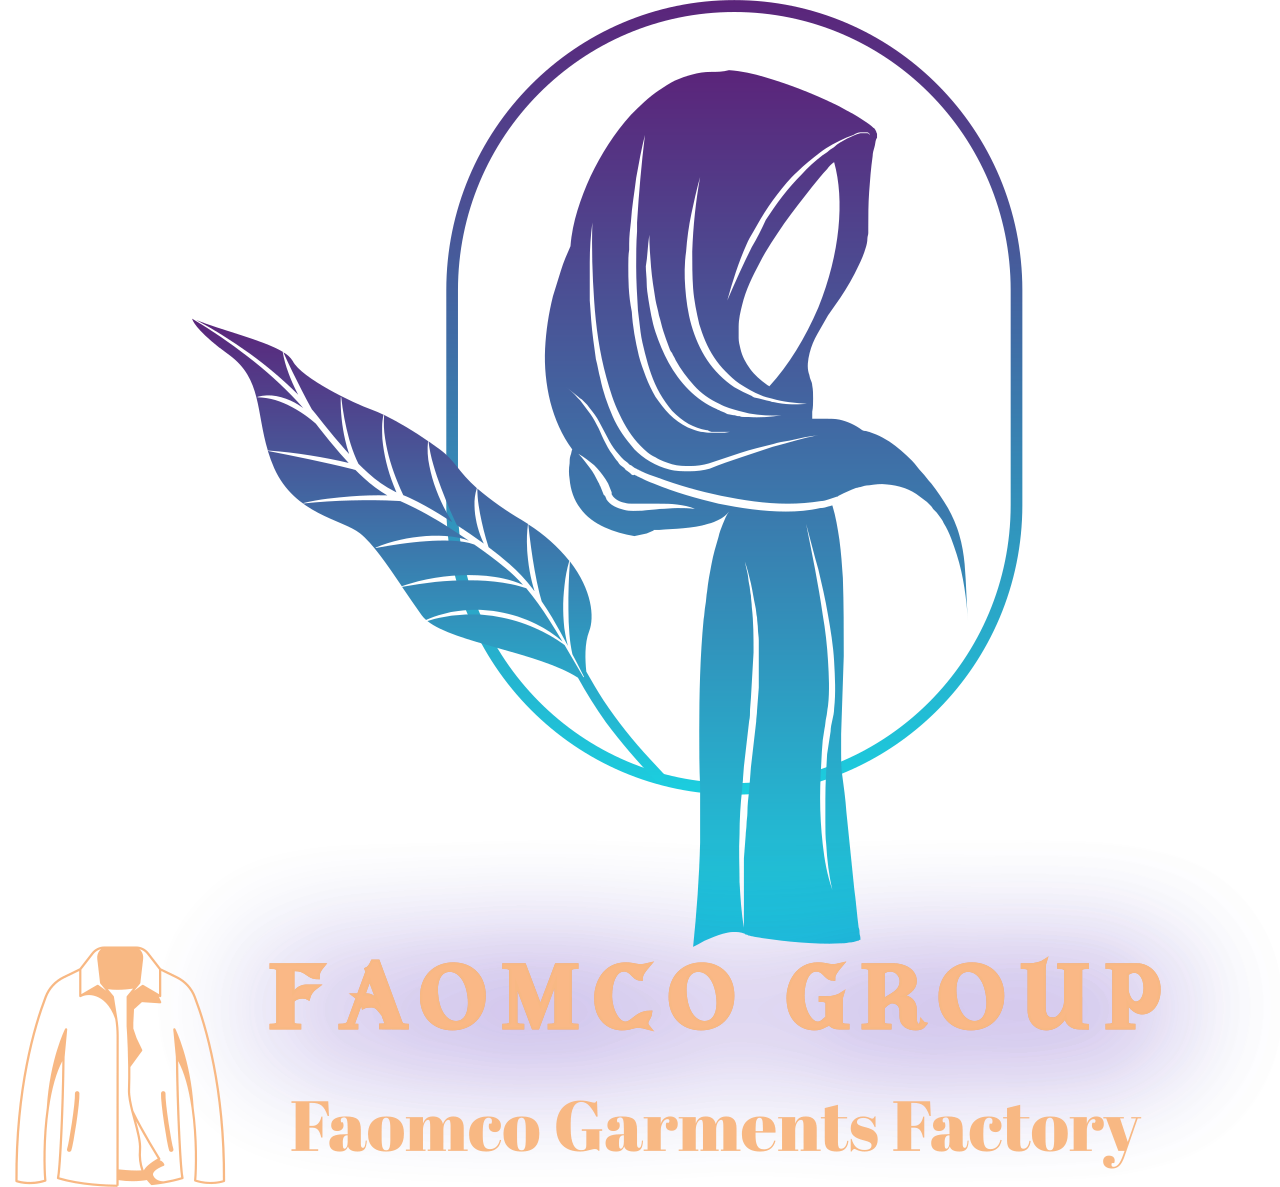 Faomco Group's logo